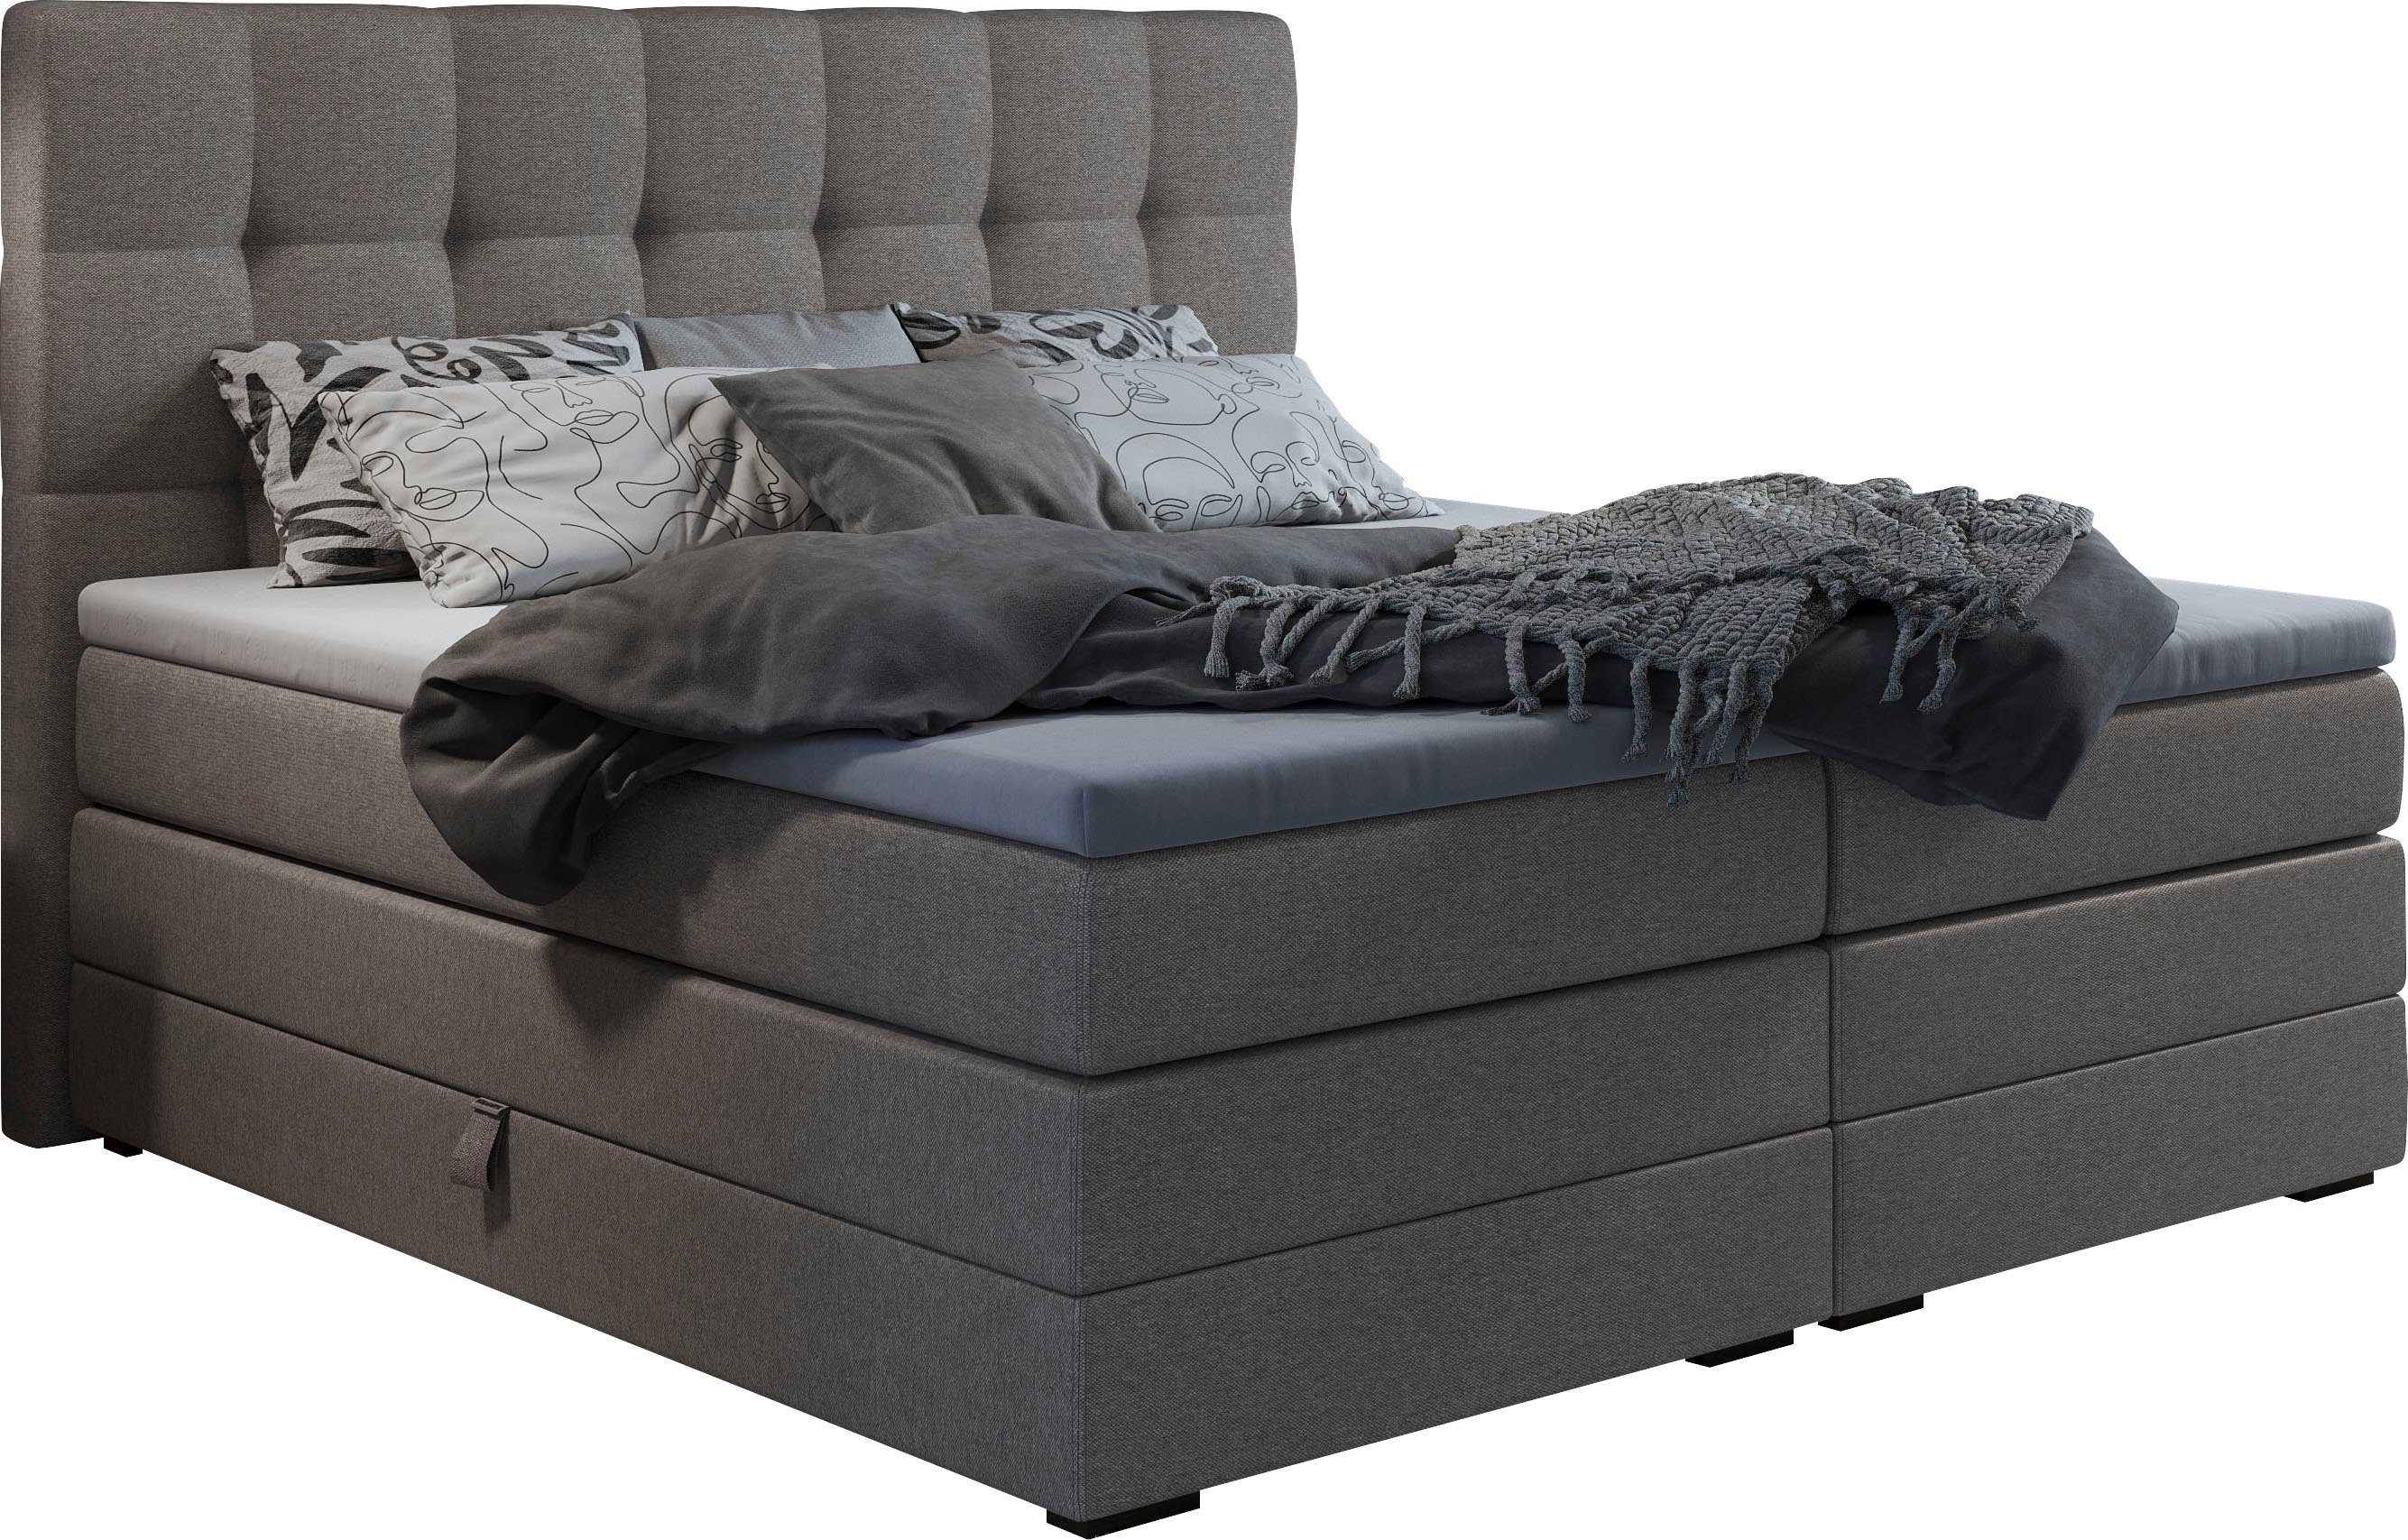 Betten 200x220 online kaufen | OTTO